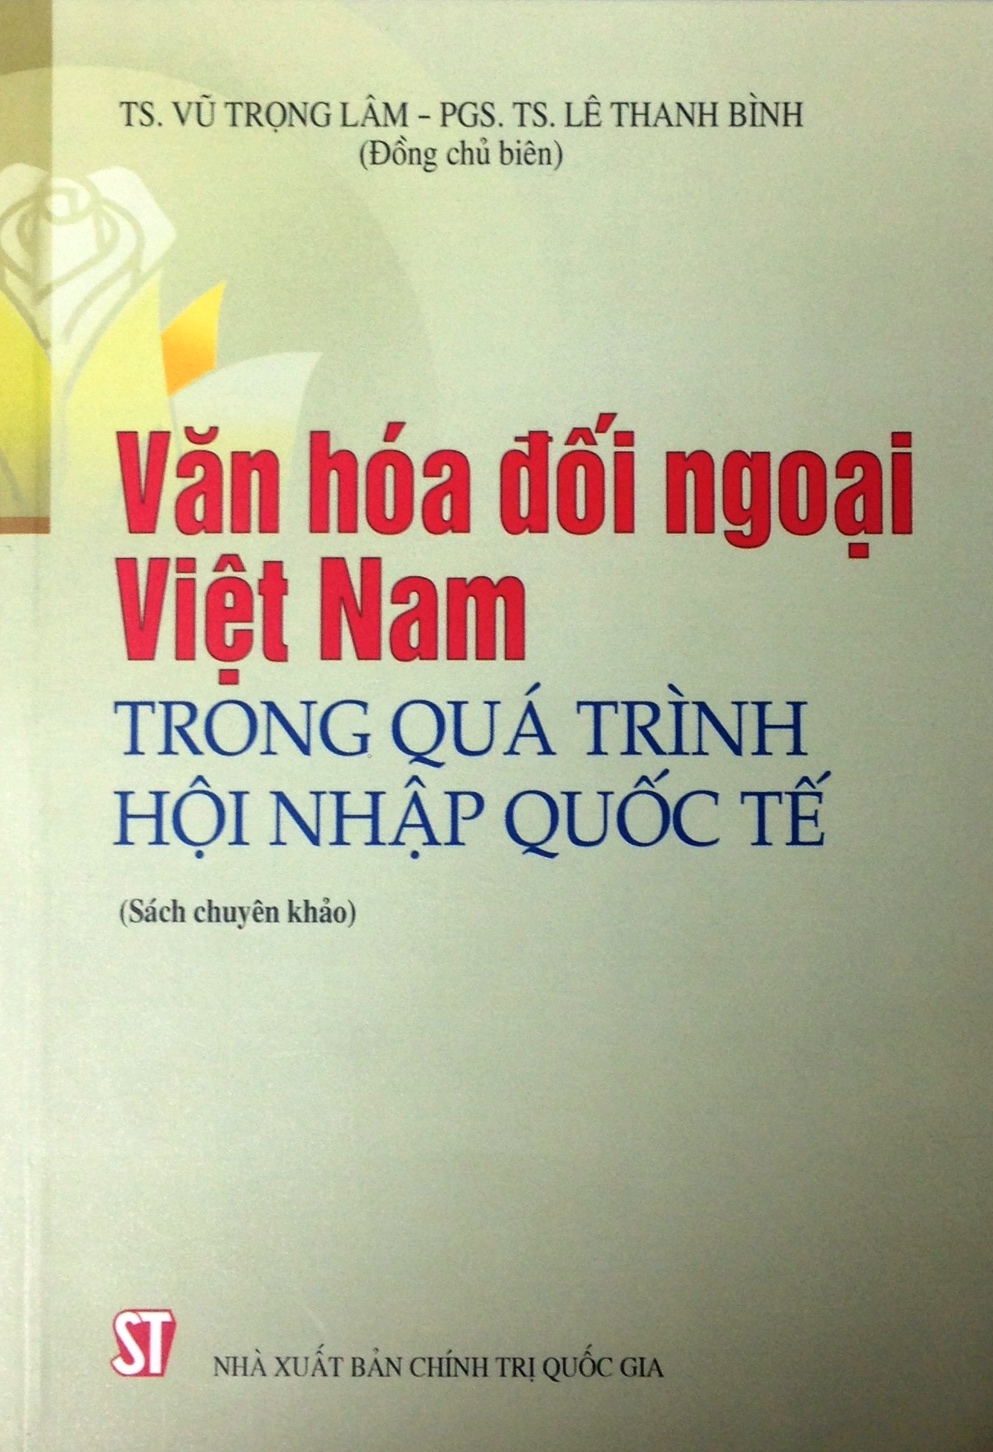 Văn hóa đối ngoại Việt Nam trong quá trình hội nhập quốc tế (sách chuyên khảo)